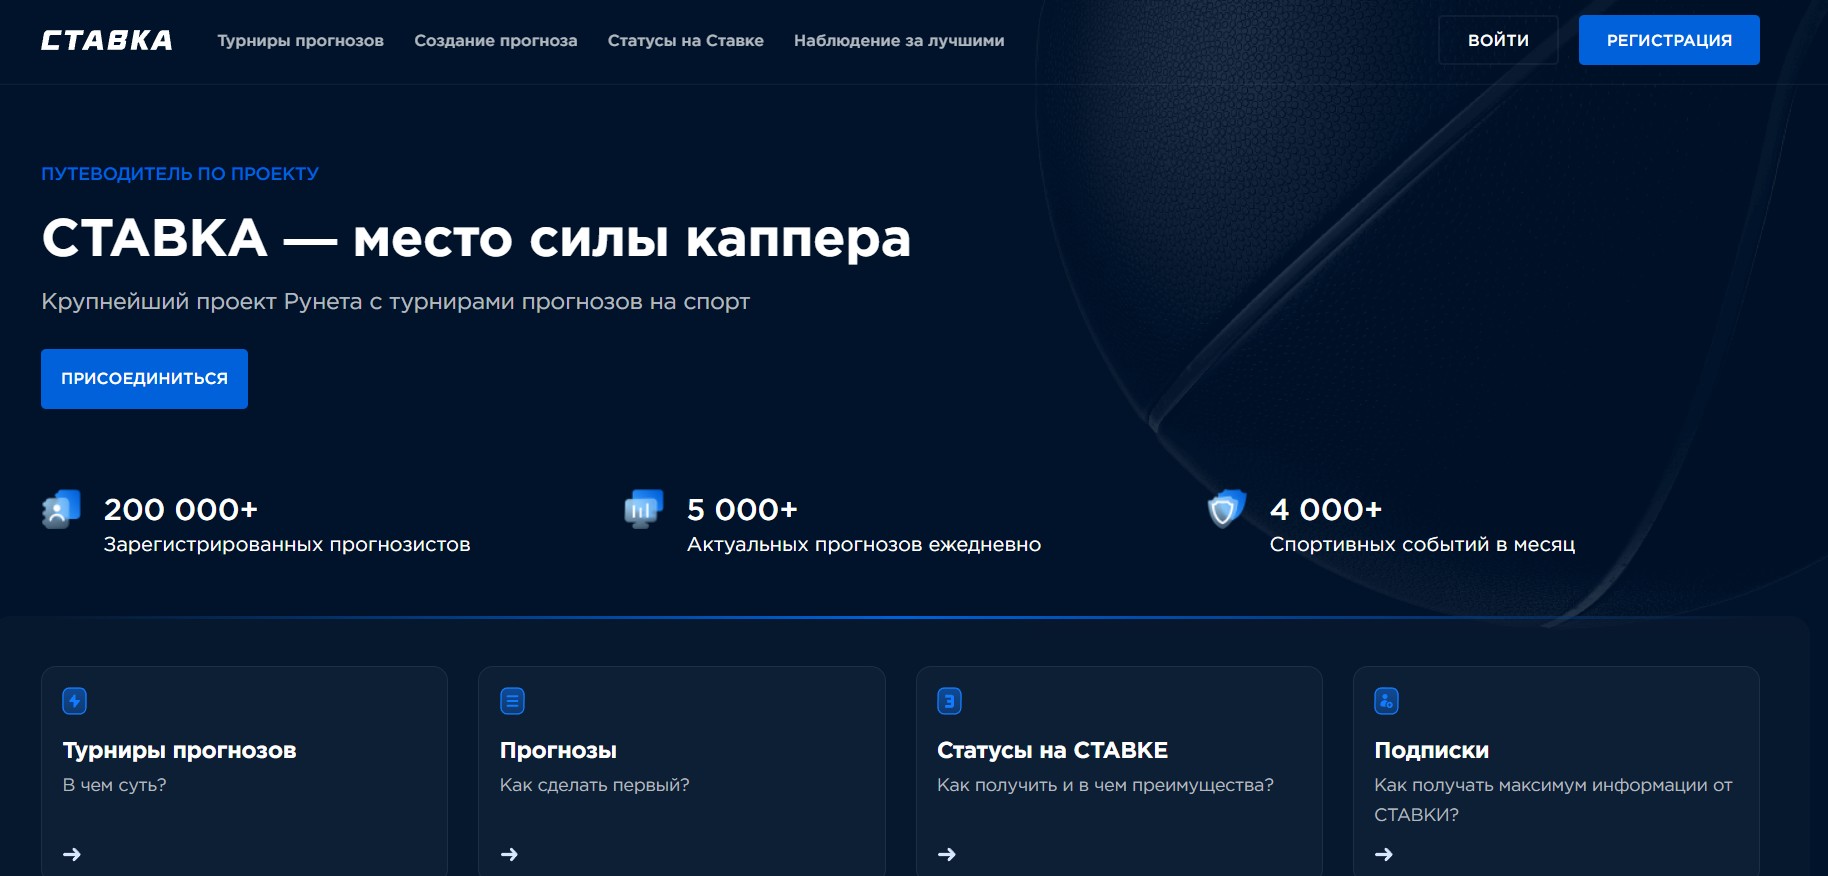 Официальный сайт Stavka TV с рейтингом прогнозистов